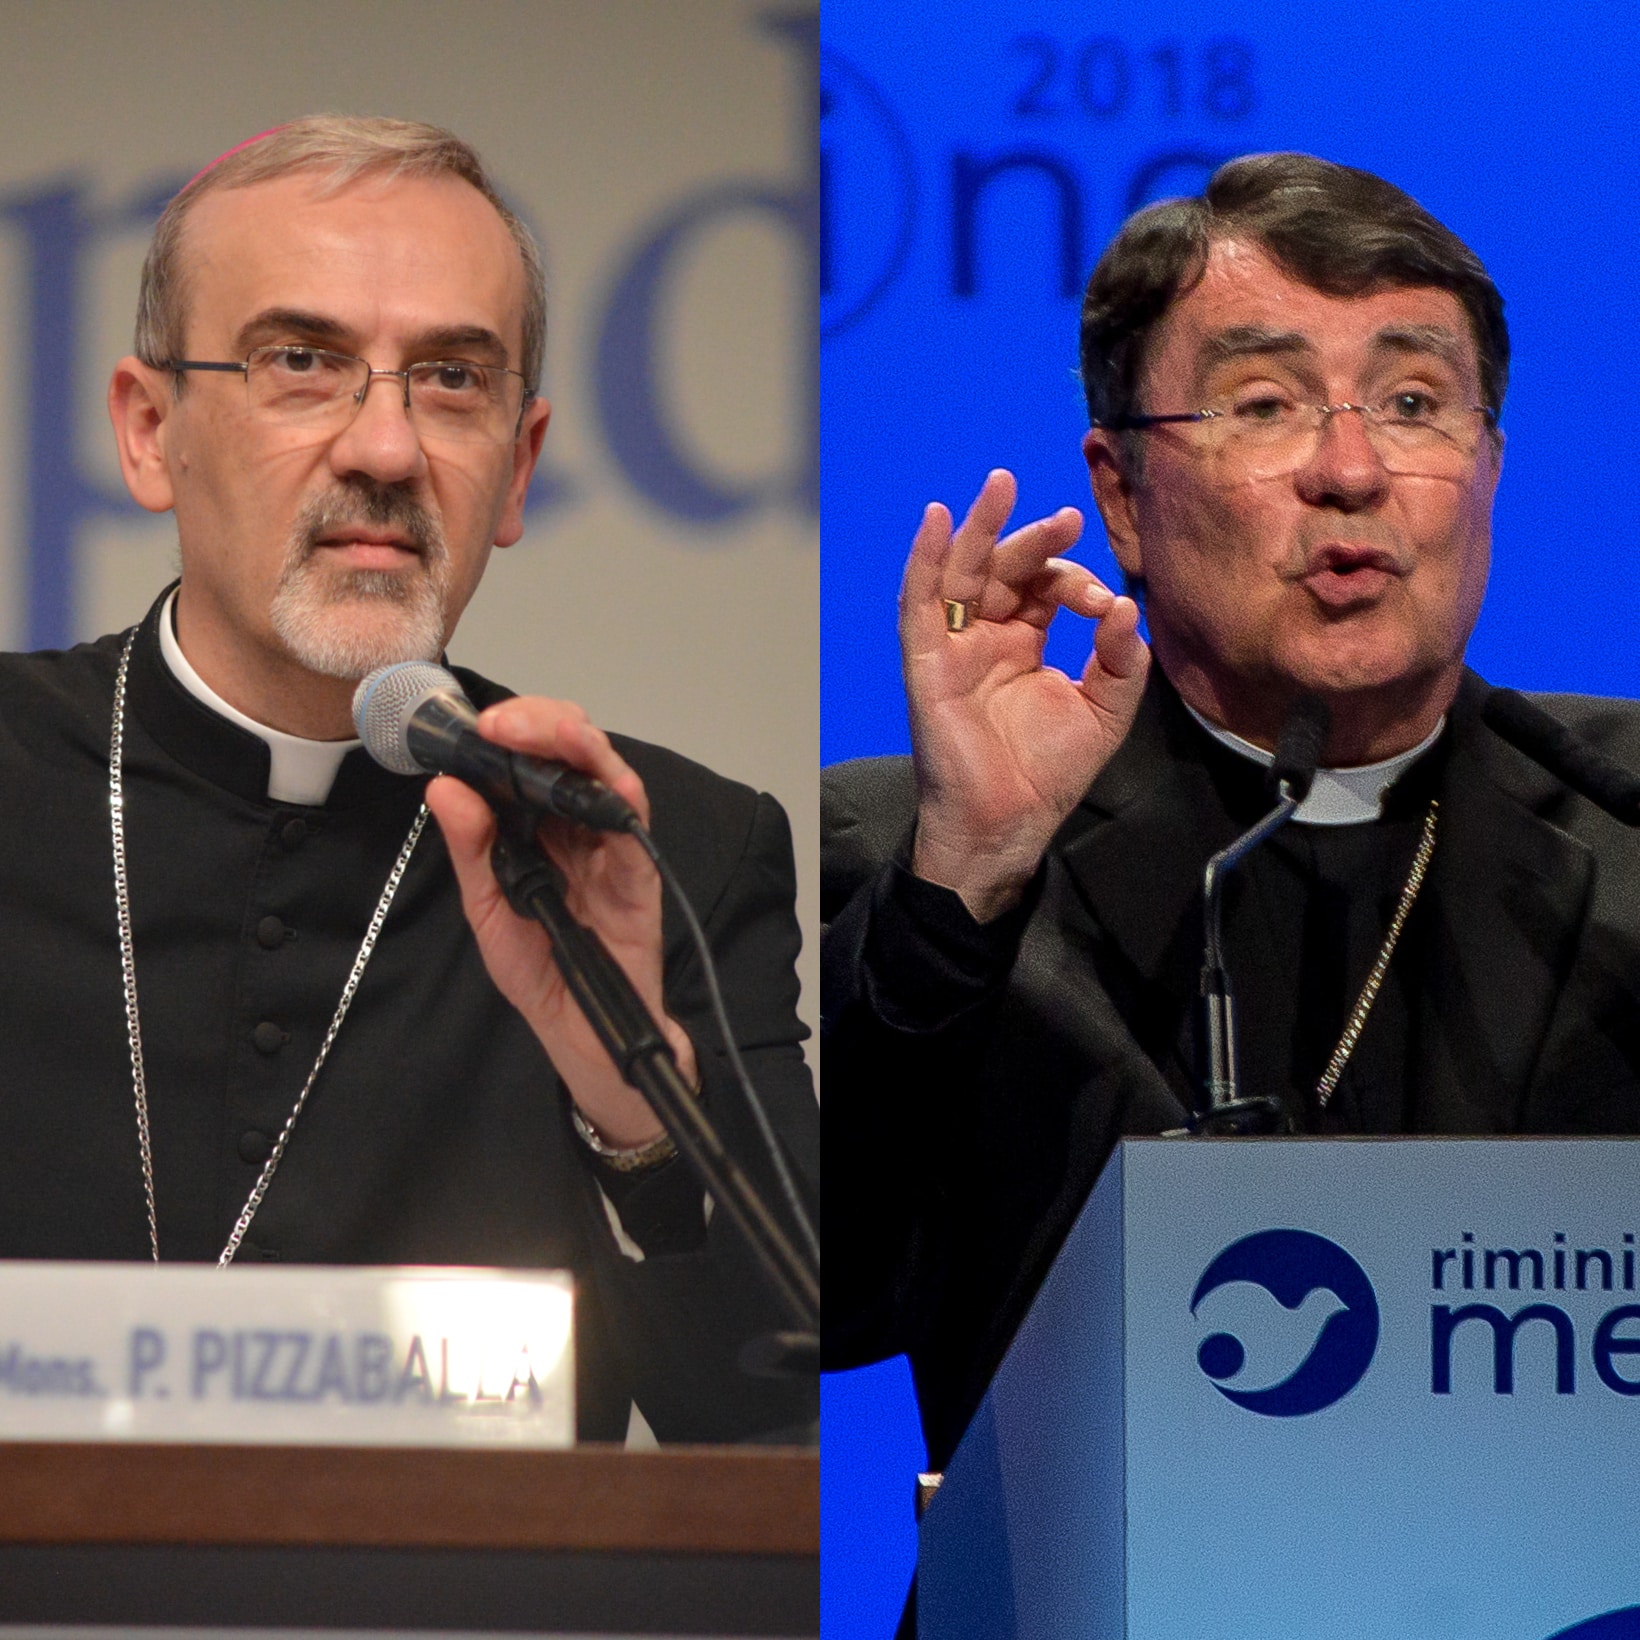 Featured image for “Monsignor Pierre e monsignor Pizzaballa saranno cardinali”